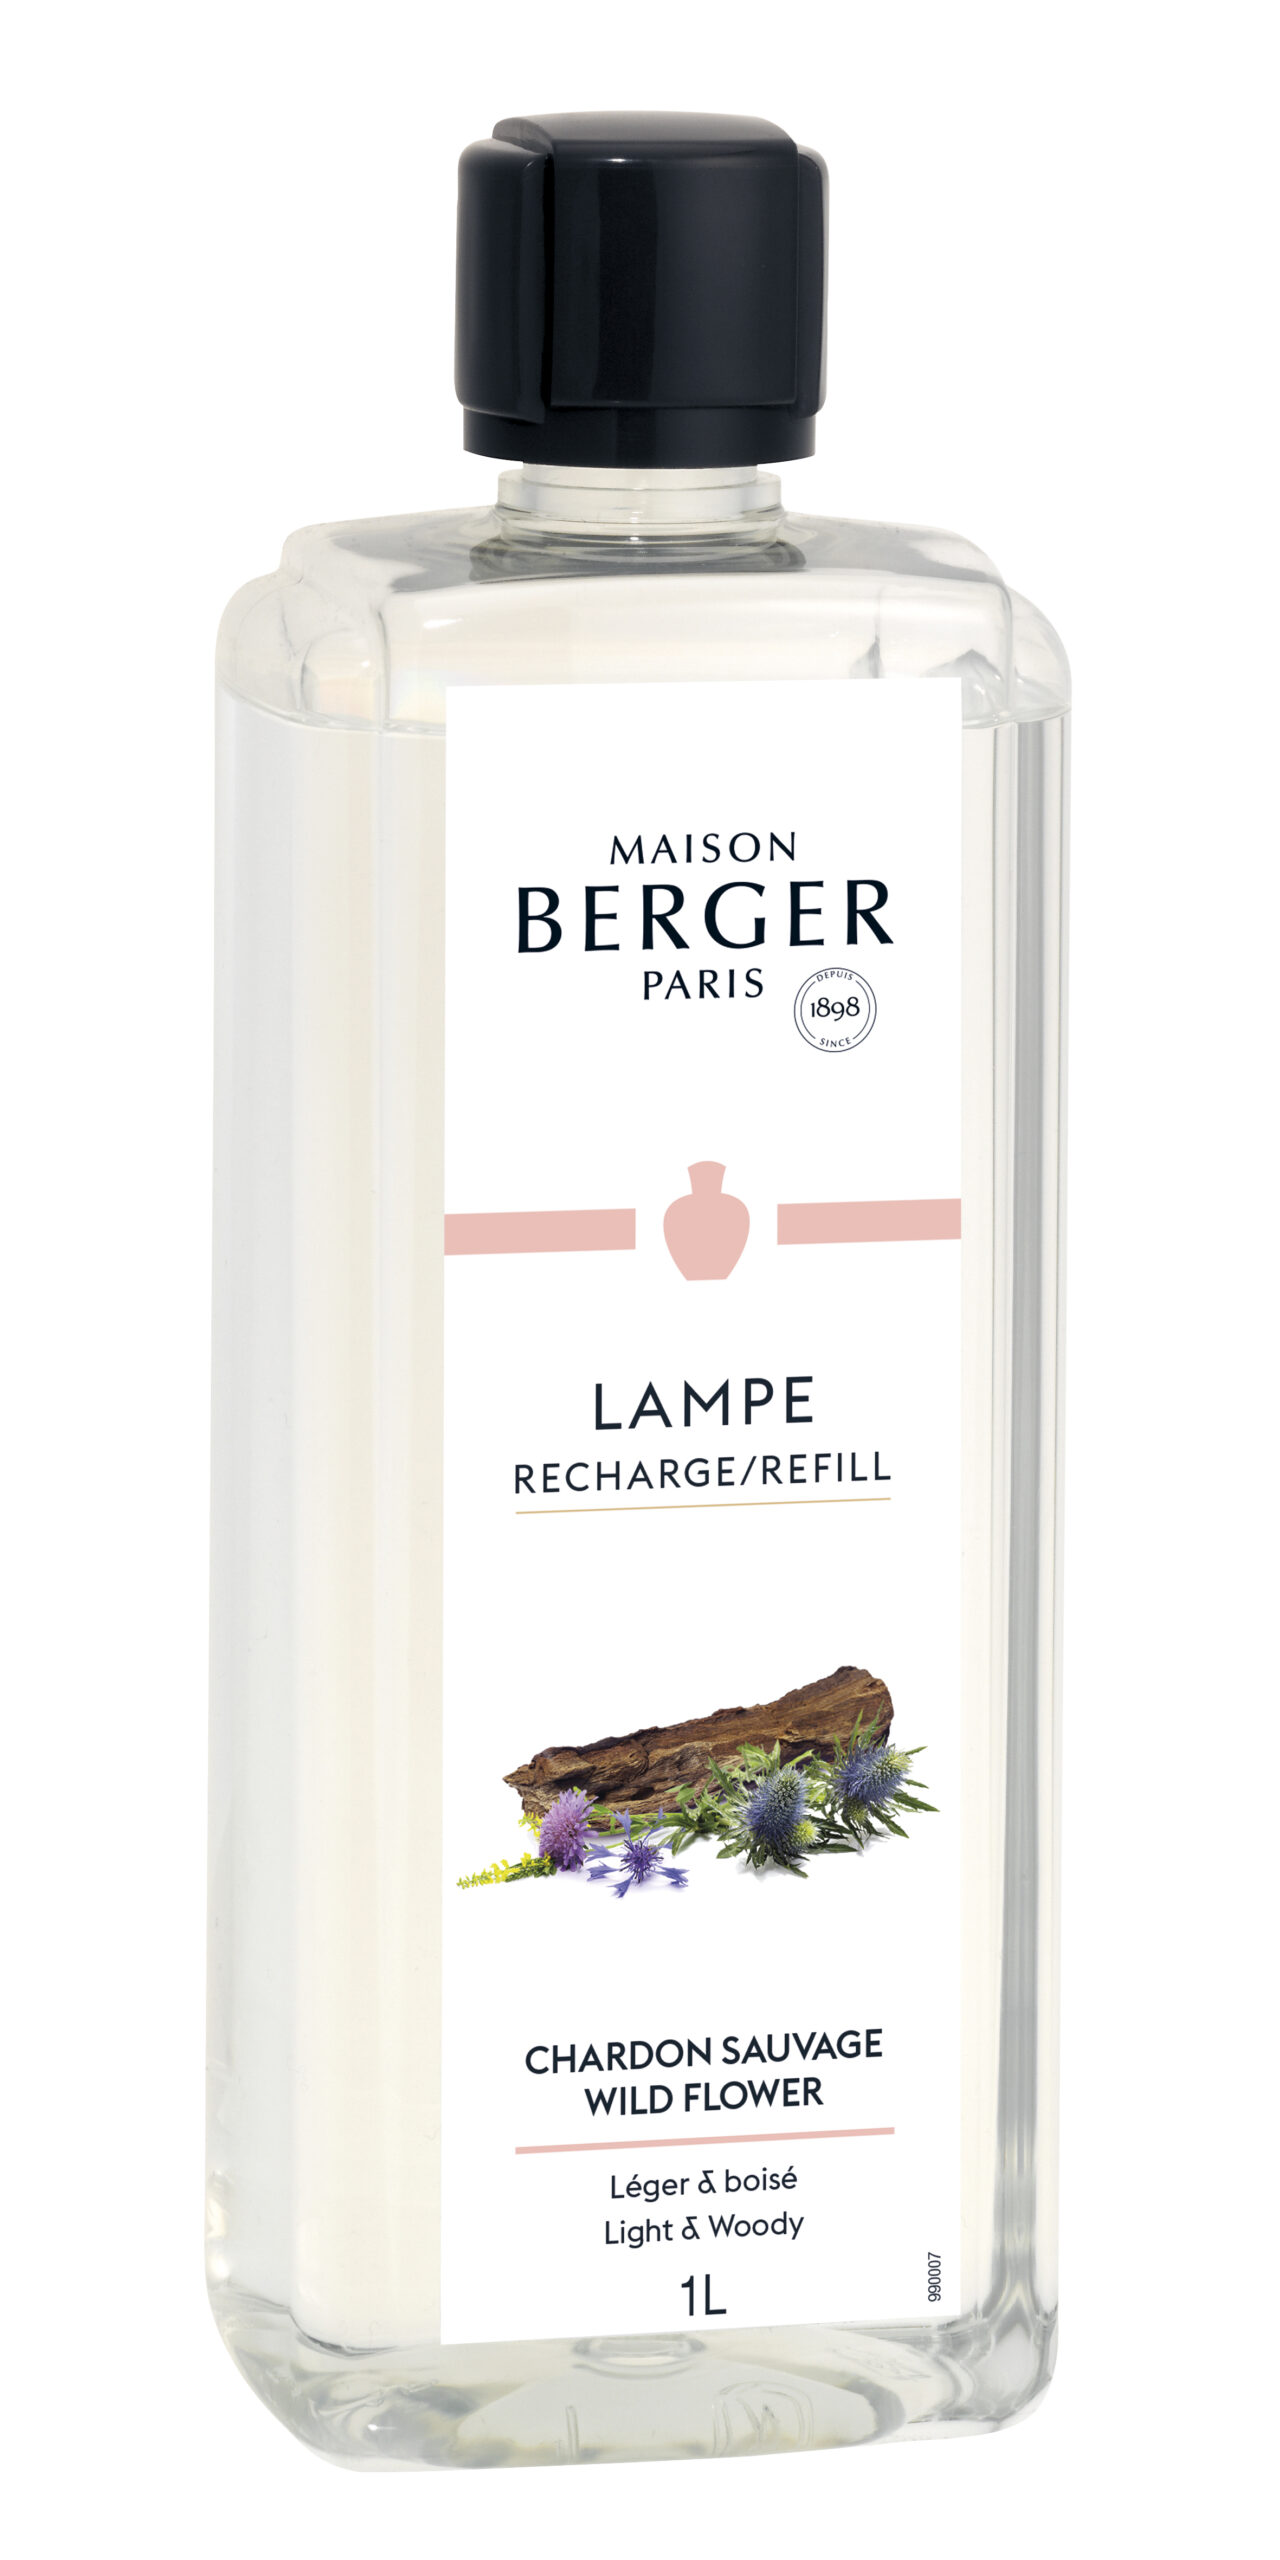 Maison Berger Paris - parfum - Wild Flower - 1 Liter